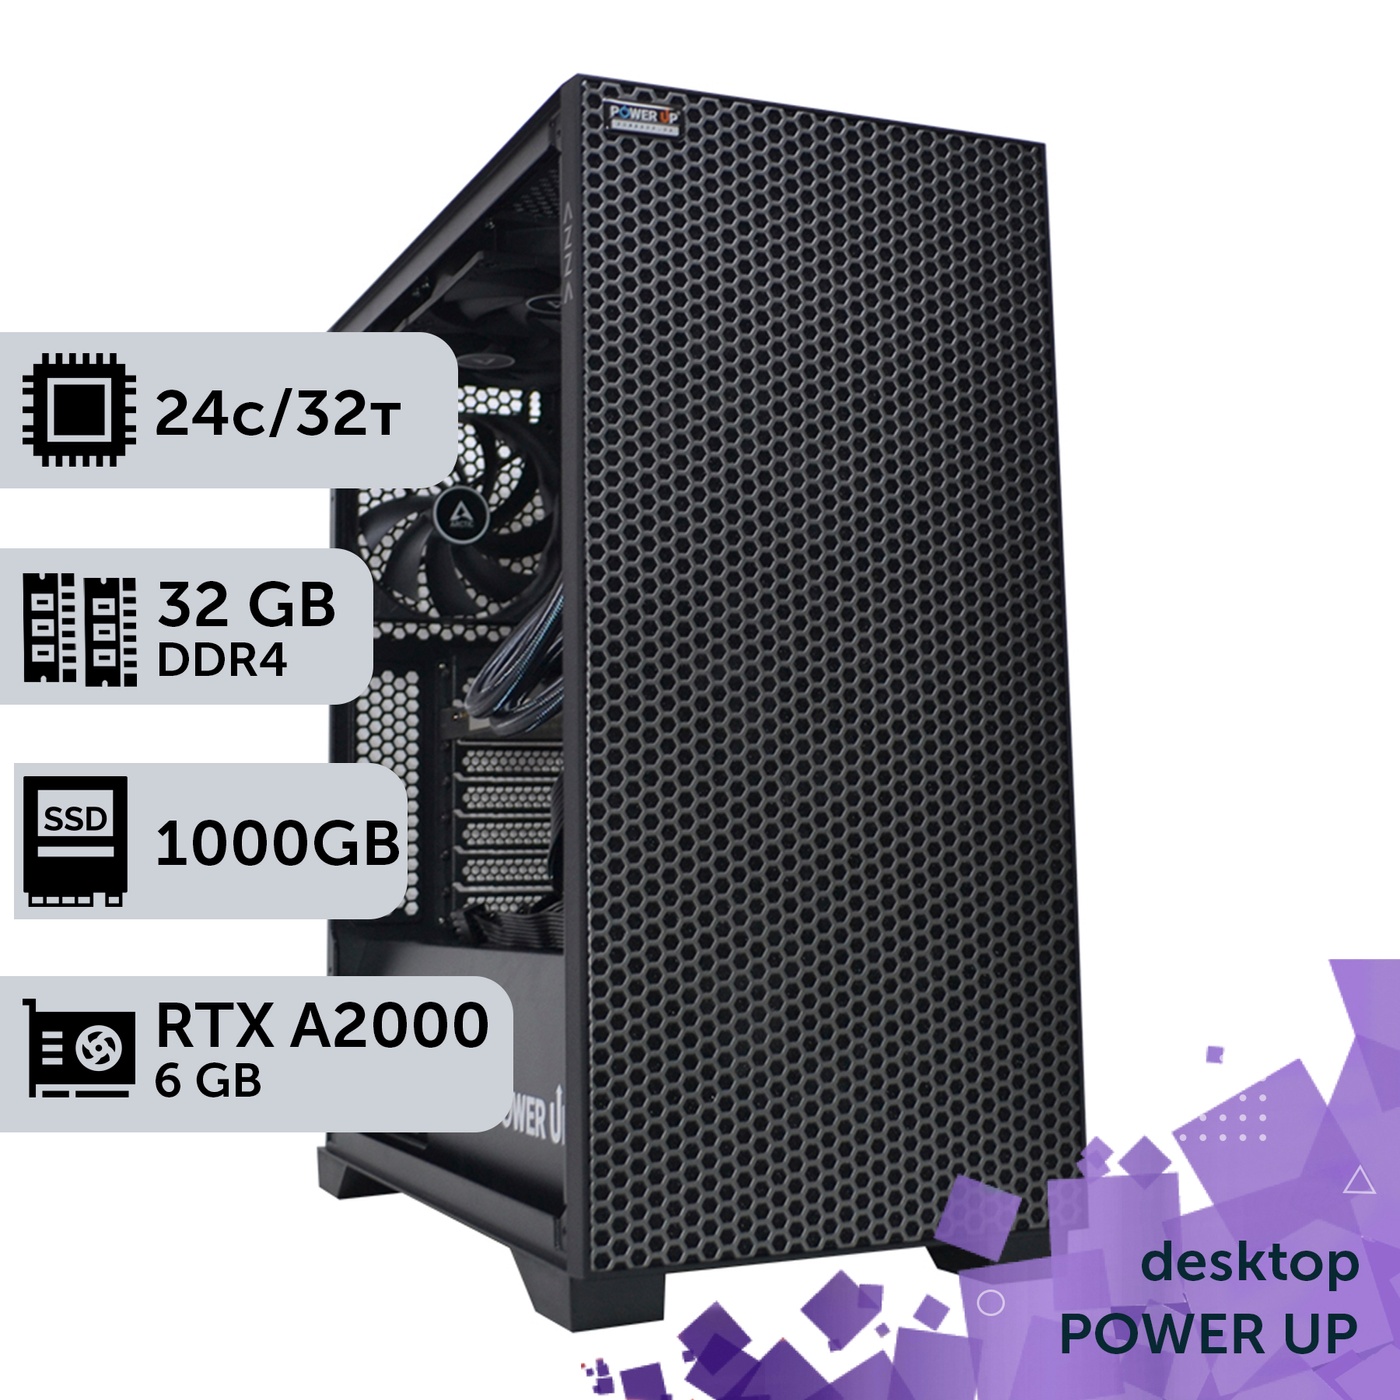 Рабочая станция PowerUp Desktop #297 Core i9 14900K/32 GB/SSD 1TB/NVIDIA Quadro RTX A2000 6GB